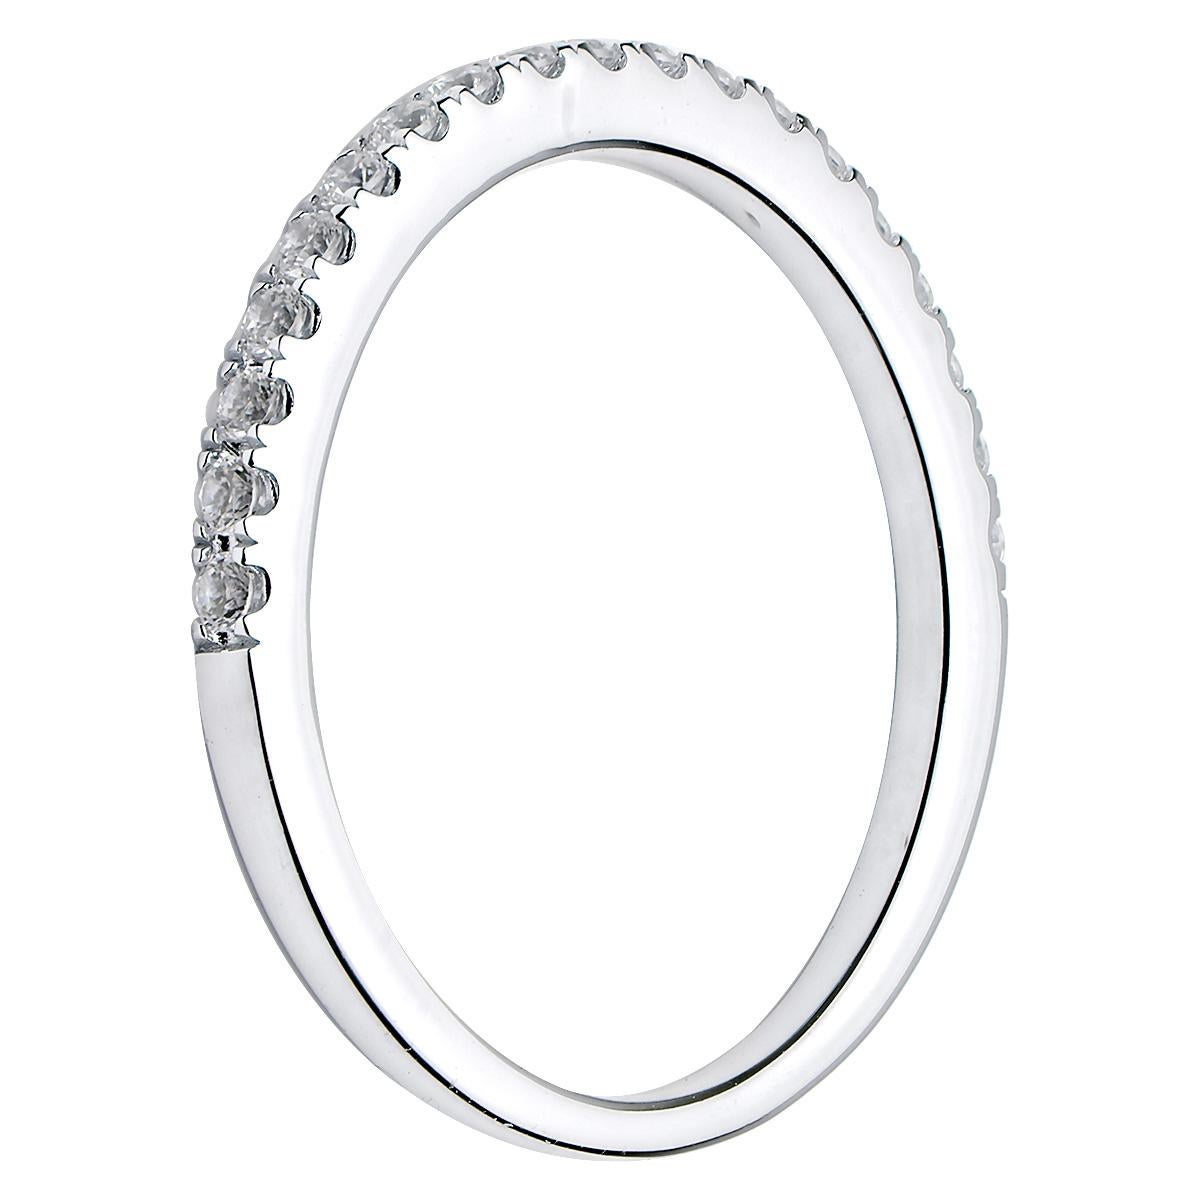 Ce magnifique bracelet simple et classique comporte 19 diamants ronds de couleur VS2, G, sertis à mi-hauteur du bracelet. Le bracelet est en or blanc 18 carats de 1,7 gramme et présente de jolis détails en forme d'épingle. Cette bague est de taille